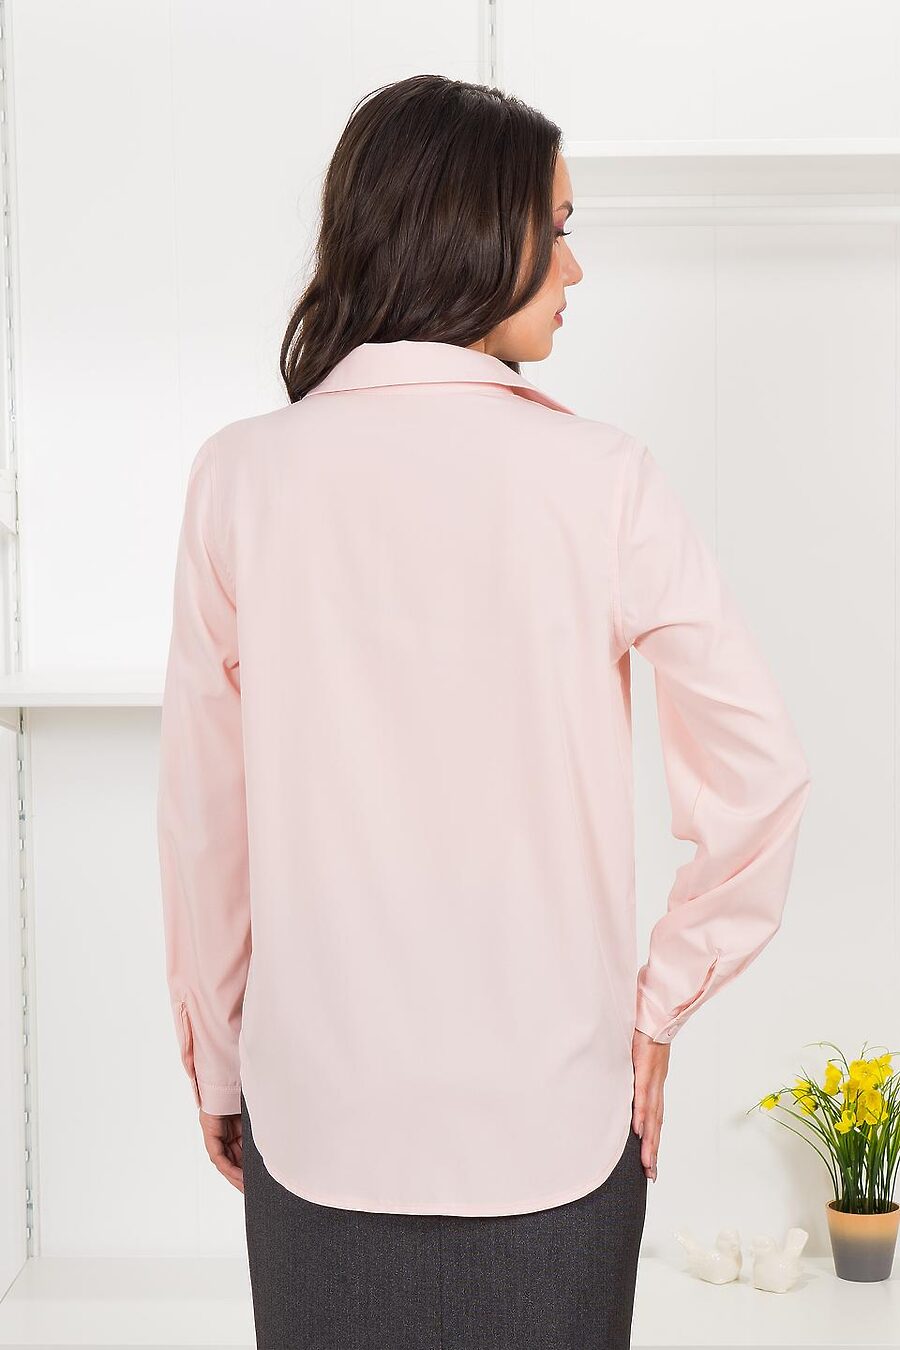 Рубашка  для женщин BRASLAVA 796394 купить оптом от производителя. Совместная покупка женской одежды в OptMoyo